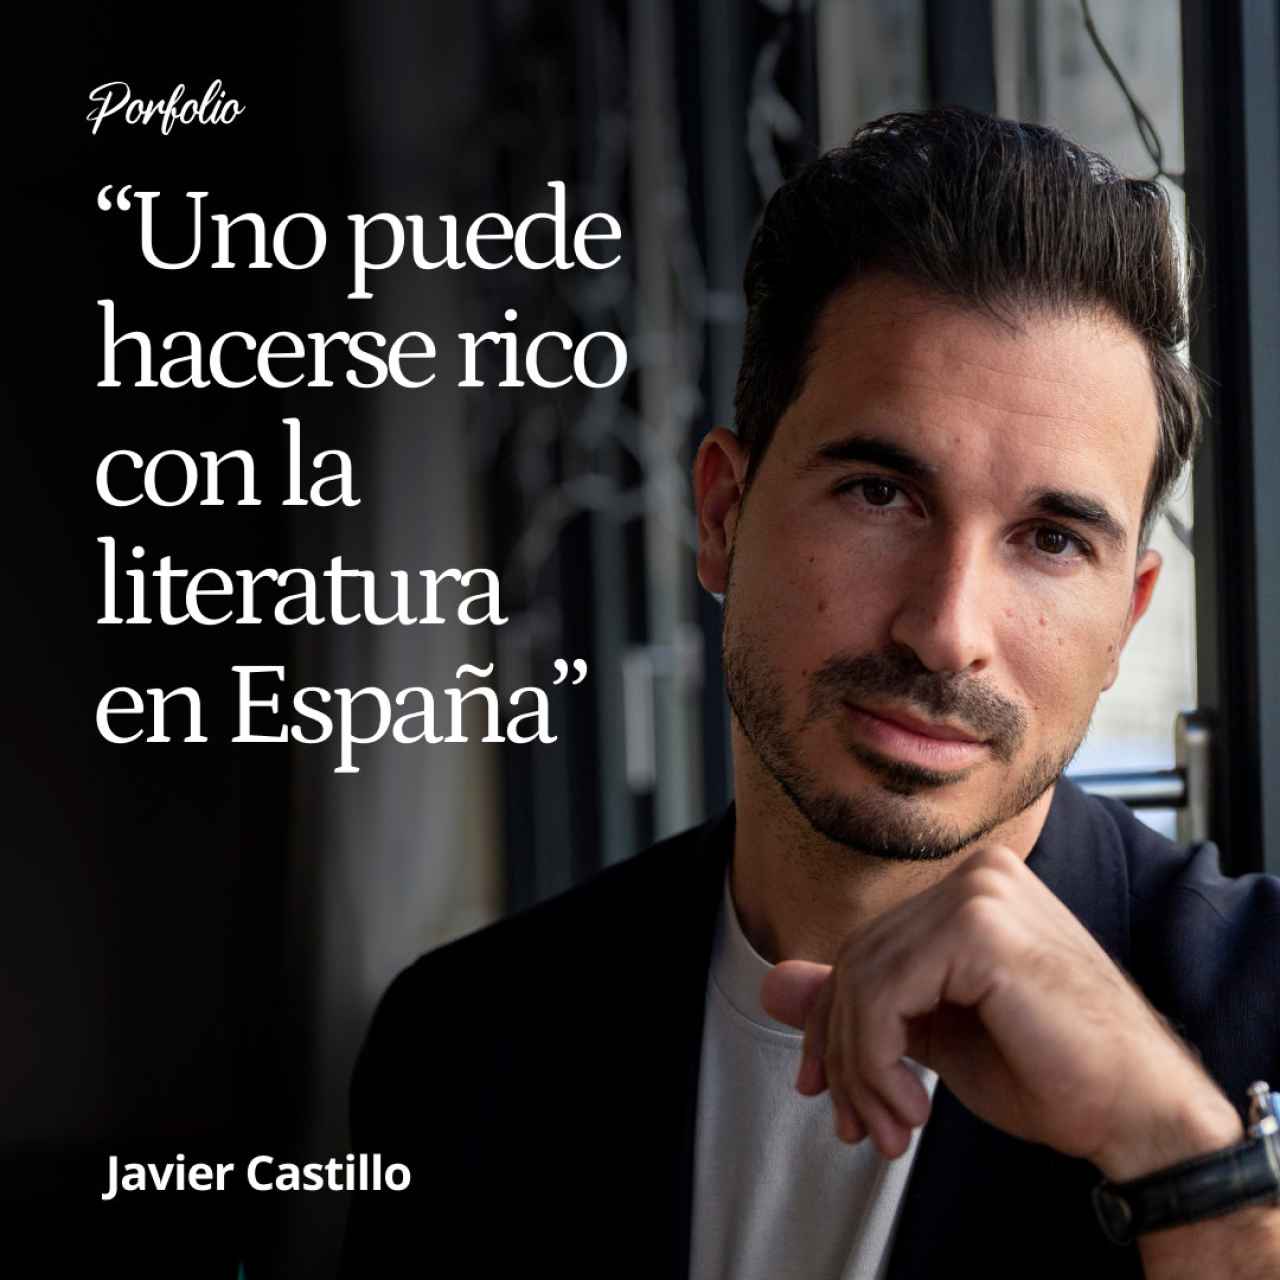 Javier Castillo: "Uno puede hacerse rico con la literatura en España: puedes ganar como un futbolista de mitad de la tabla”